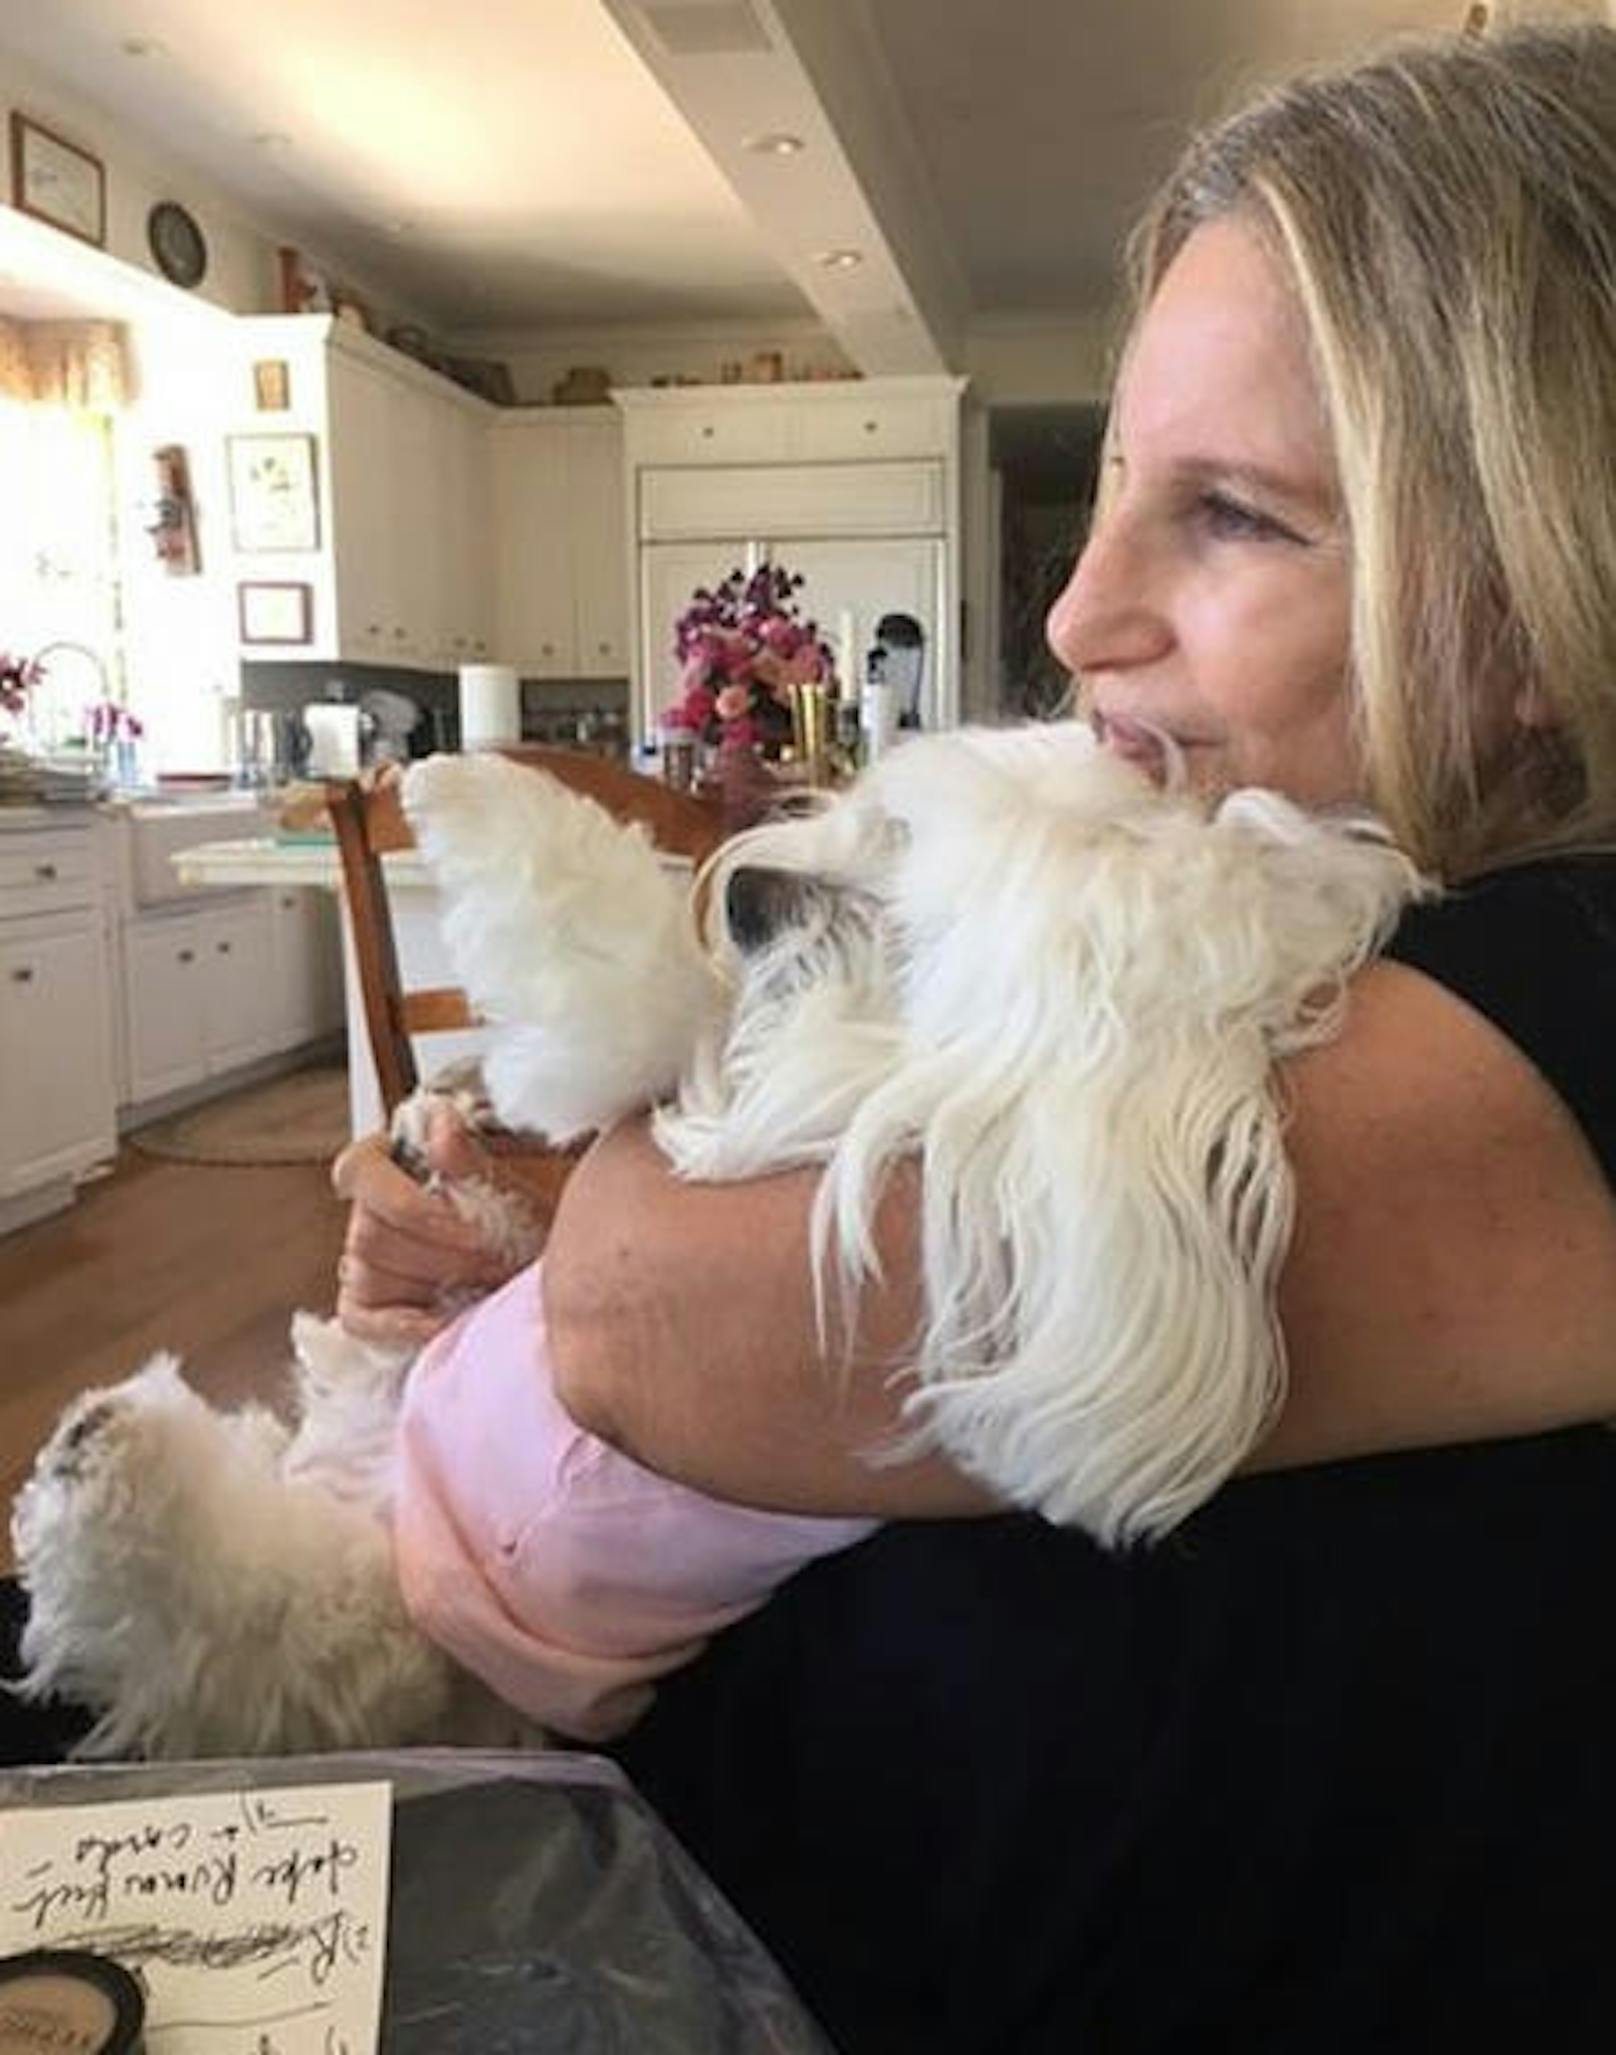 29.05.2017: Superstar Barbra Streisand trauert. Nach 14 Jahren ist am Wochenende ihr Hund Samantha, den sie liebevoll Sammie genannt hat, gestorben. Auf ihren Social-Media-Kanälen postete sie am Sonntag das letzte gemeinsame Bild mit ihr.